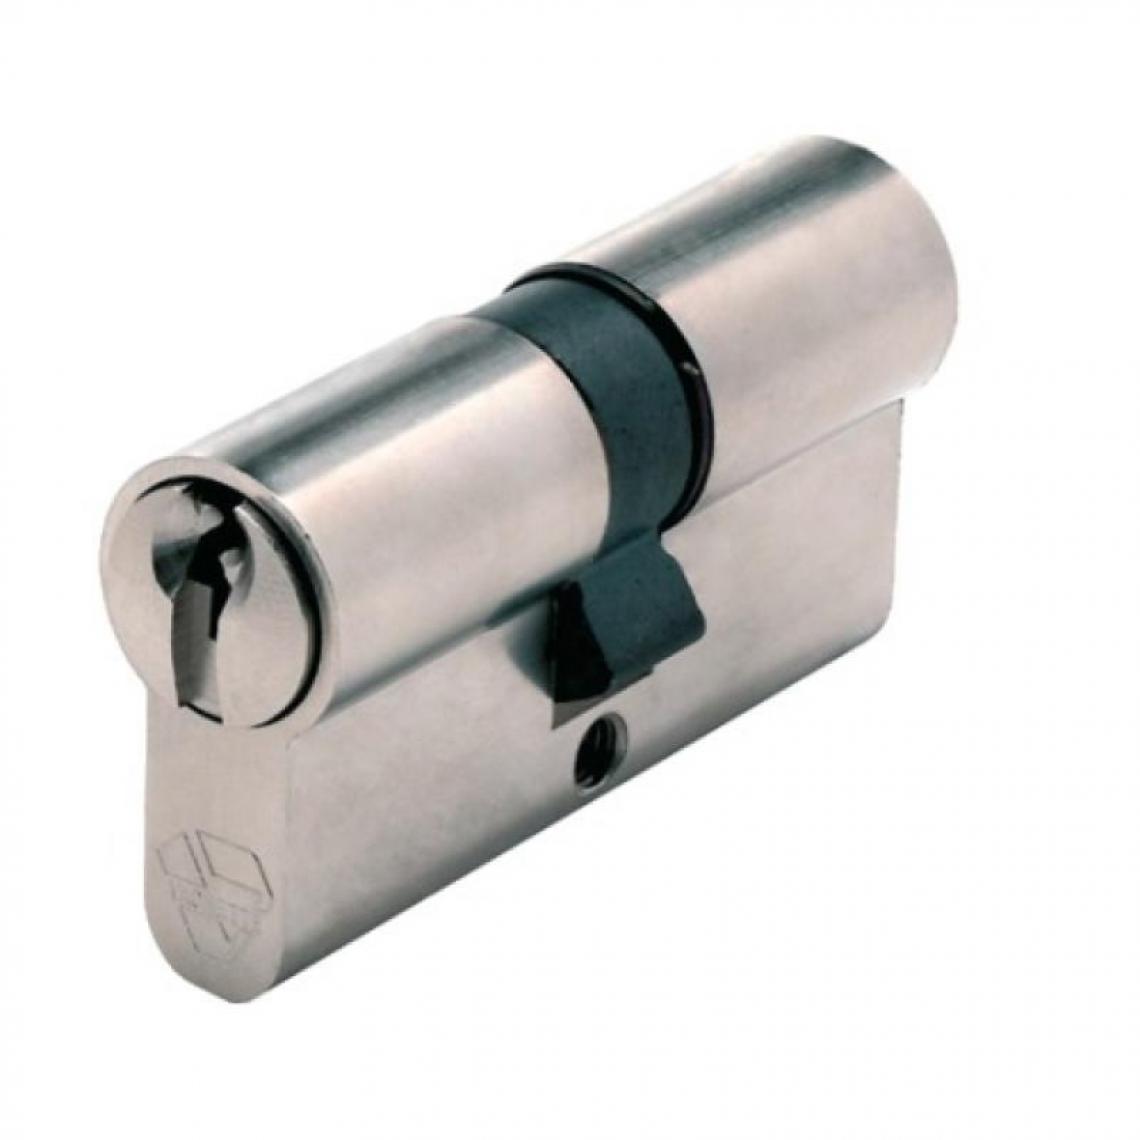 Vachette - Cylindre double breveté type Néo à clé protégée fonction clé de secours varié 3 clés 40 x 40 - Serrure